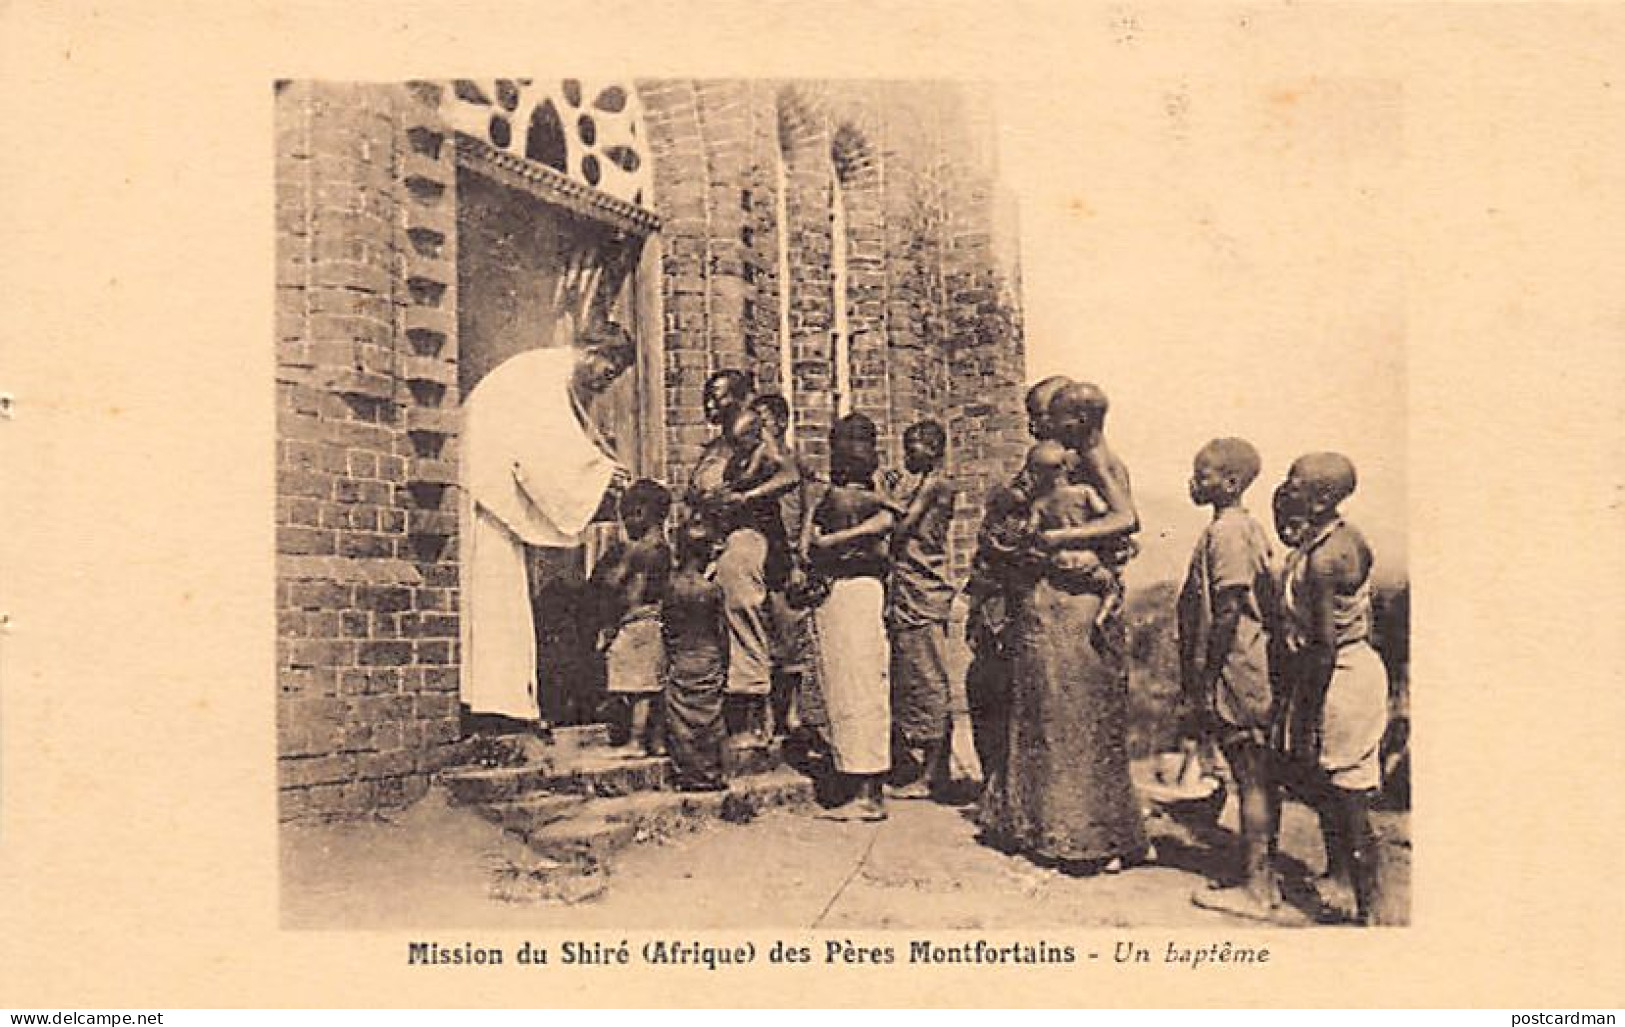 Malawi - A Baptism - Publ. Company Of Mary - Mission Du Shiré Des Pères Montfortains - Malawi